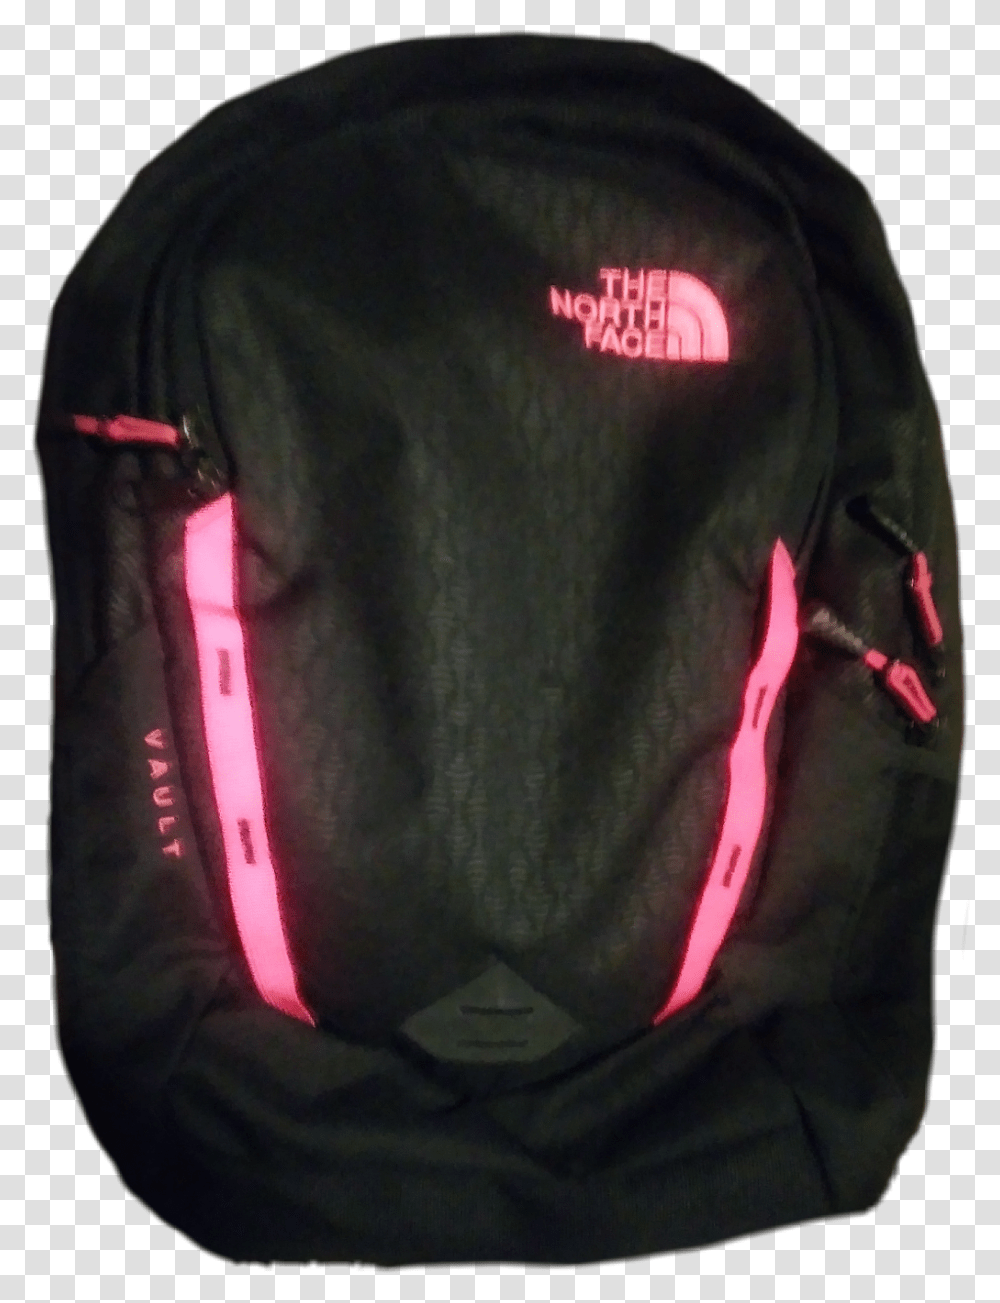 Northface Backpack Mochila Scschoolessentials Chiquitacruz North Face Hot Shot, Apparel, Bag, Helmet Transparent Png